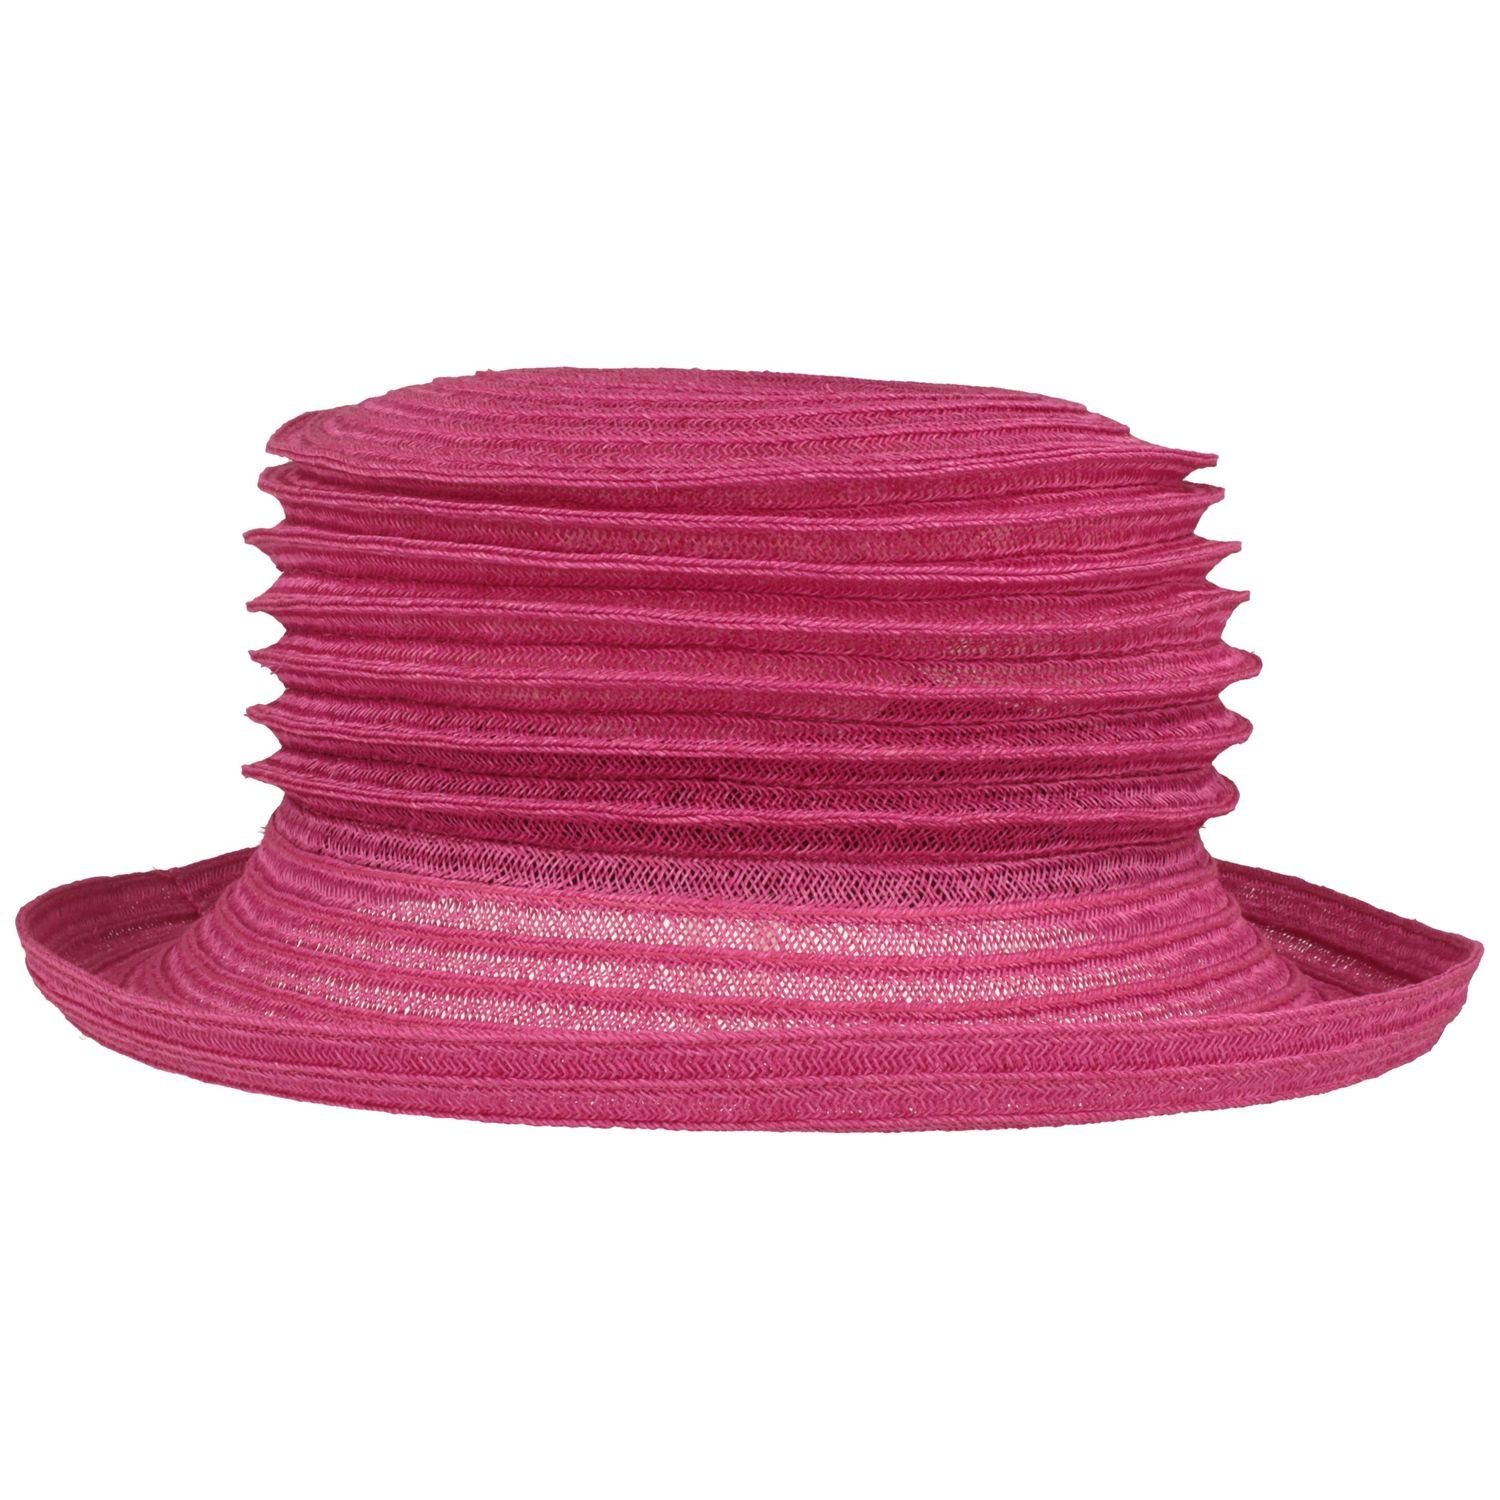 Bortenhut faltbarer 9010 Bella pink Hanf Mayser knautschbarer Strohhut aus &